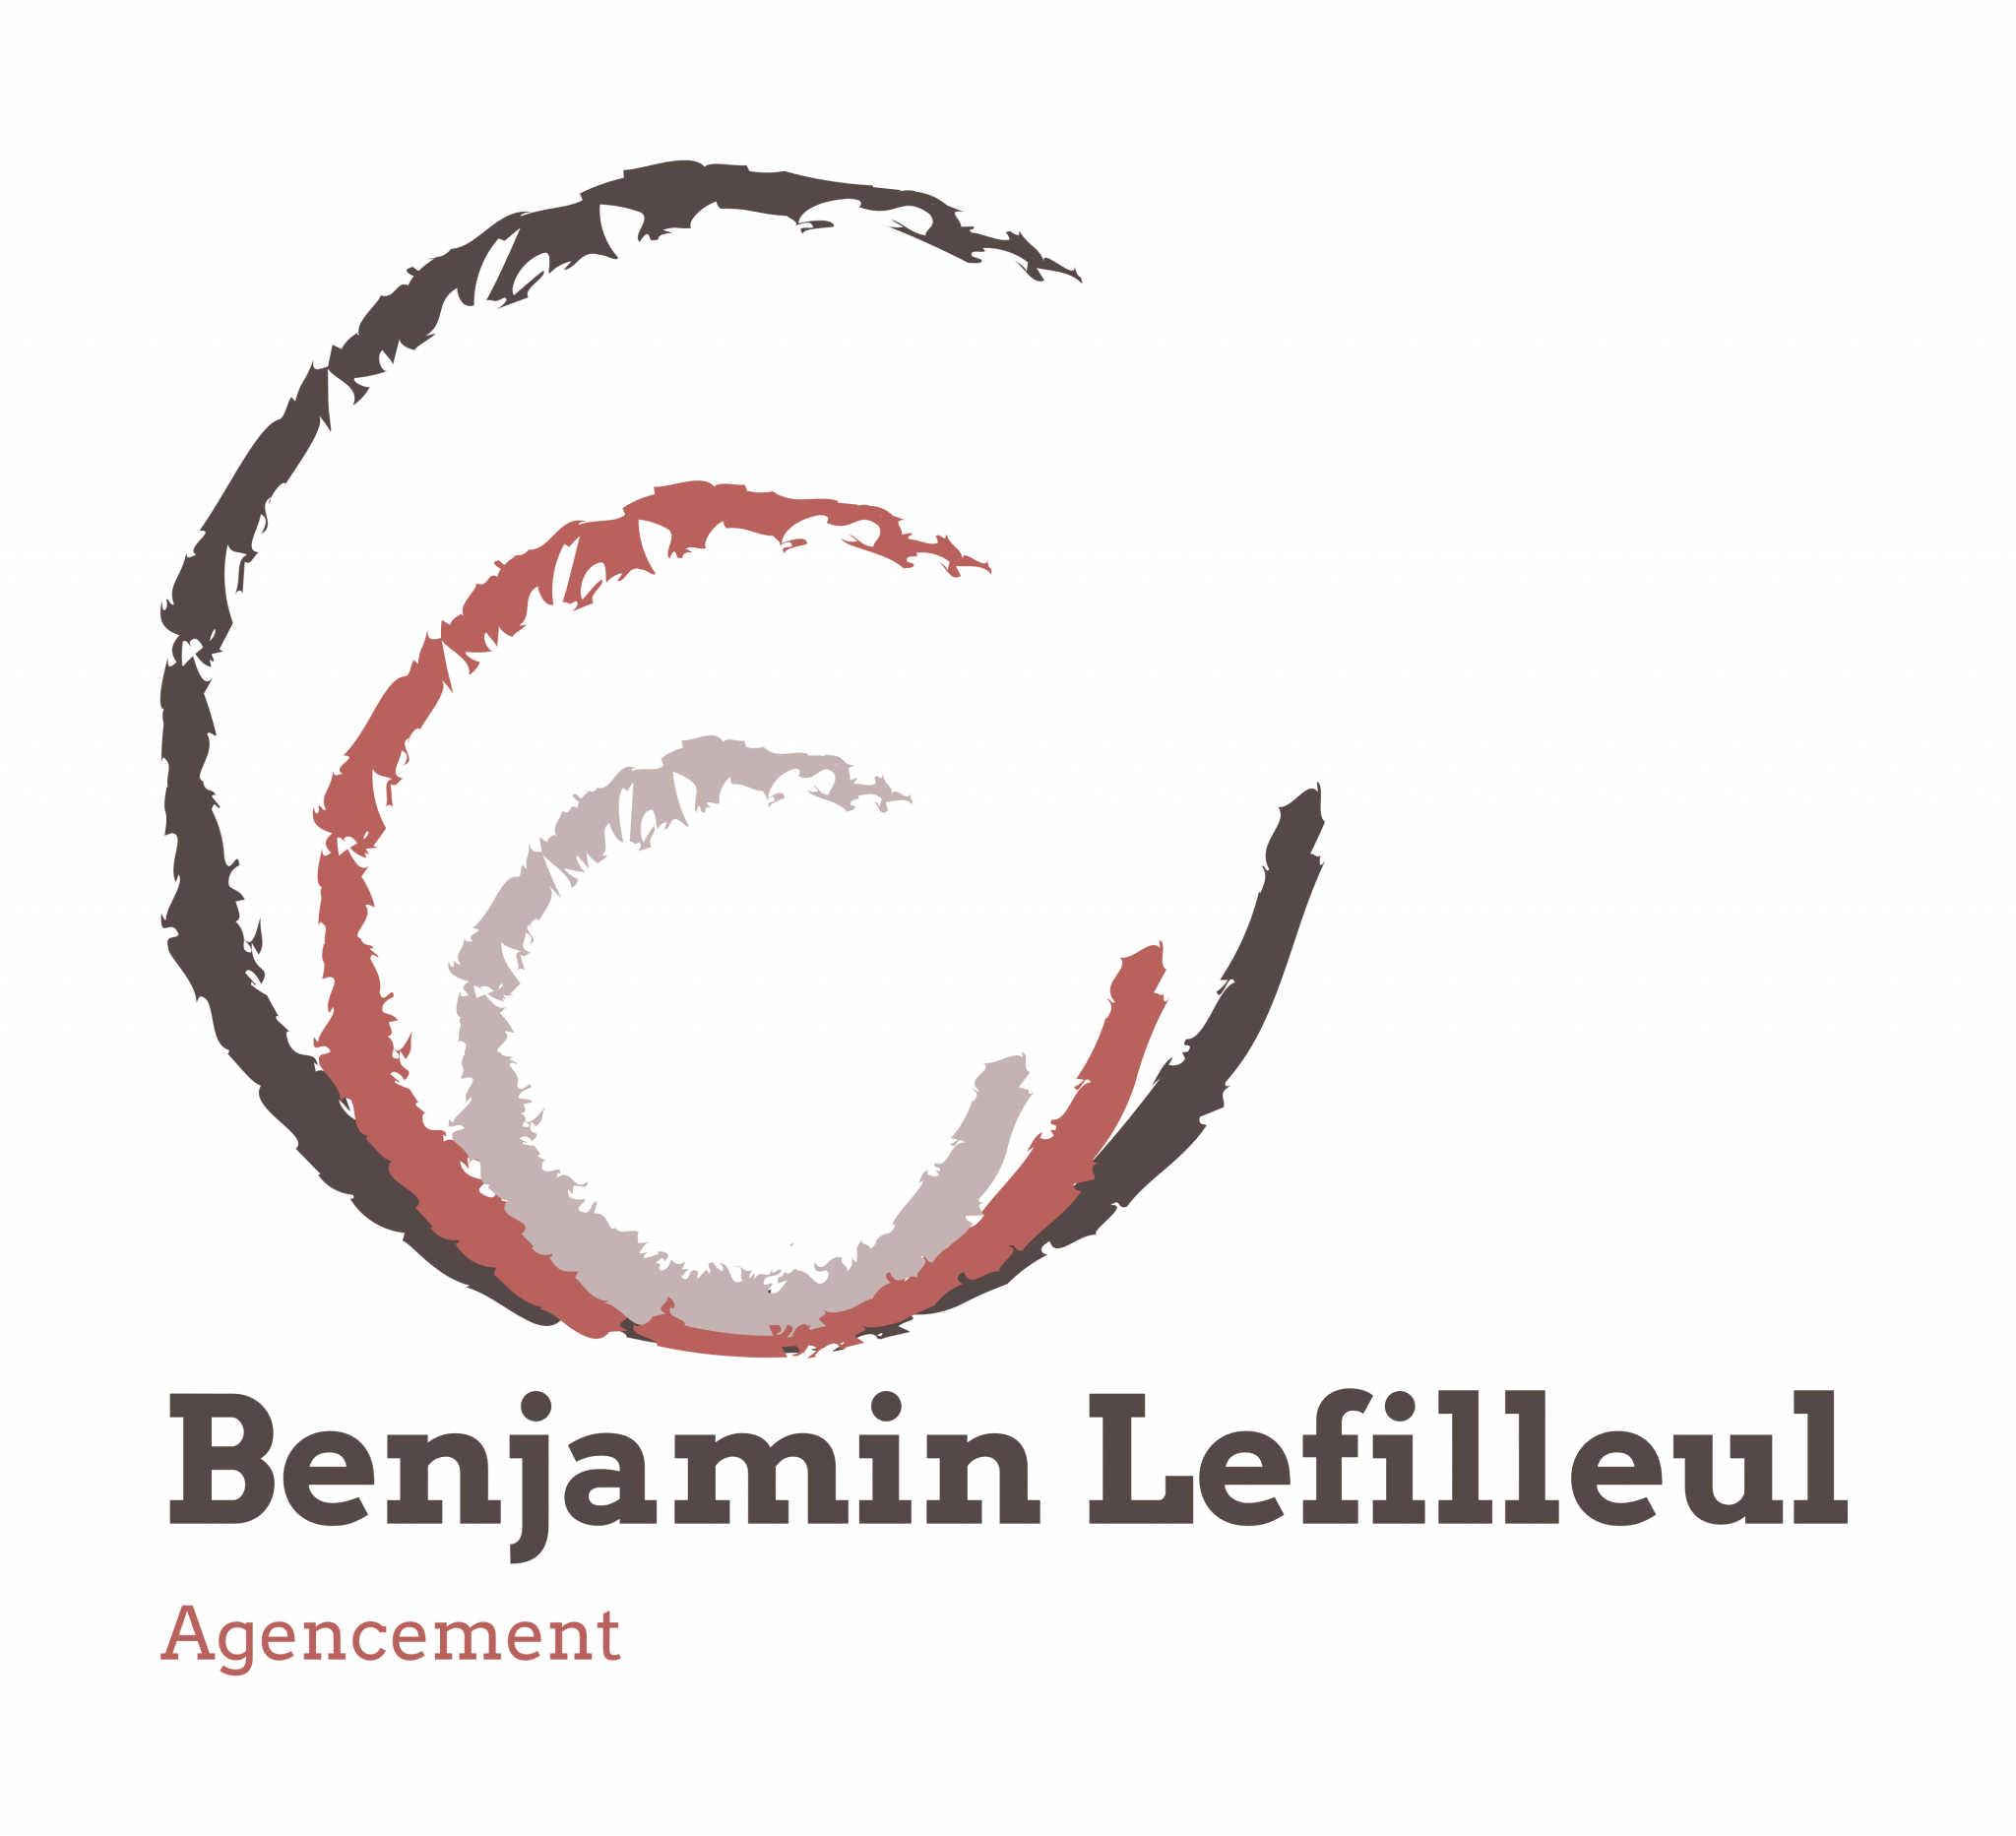 Benjamin Lefilleul Agencement